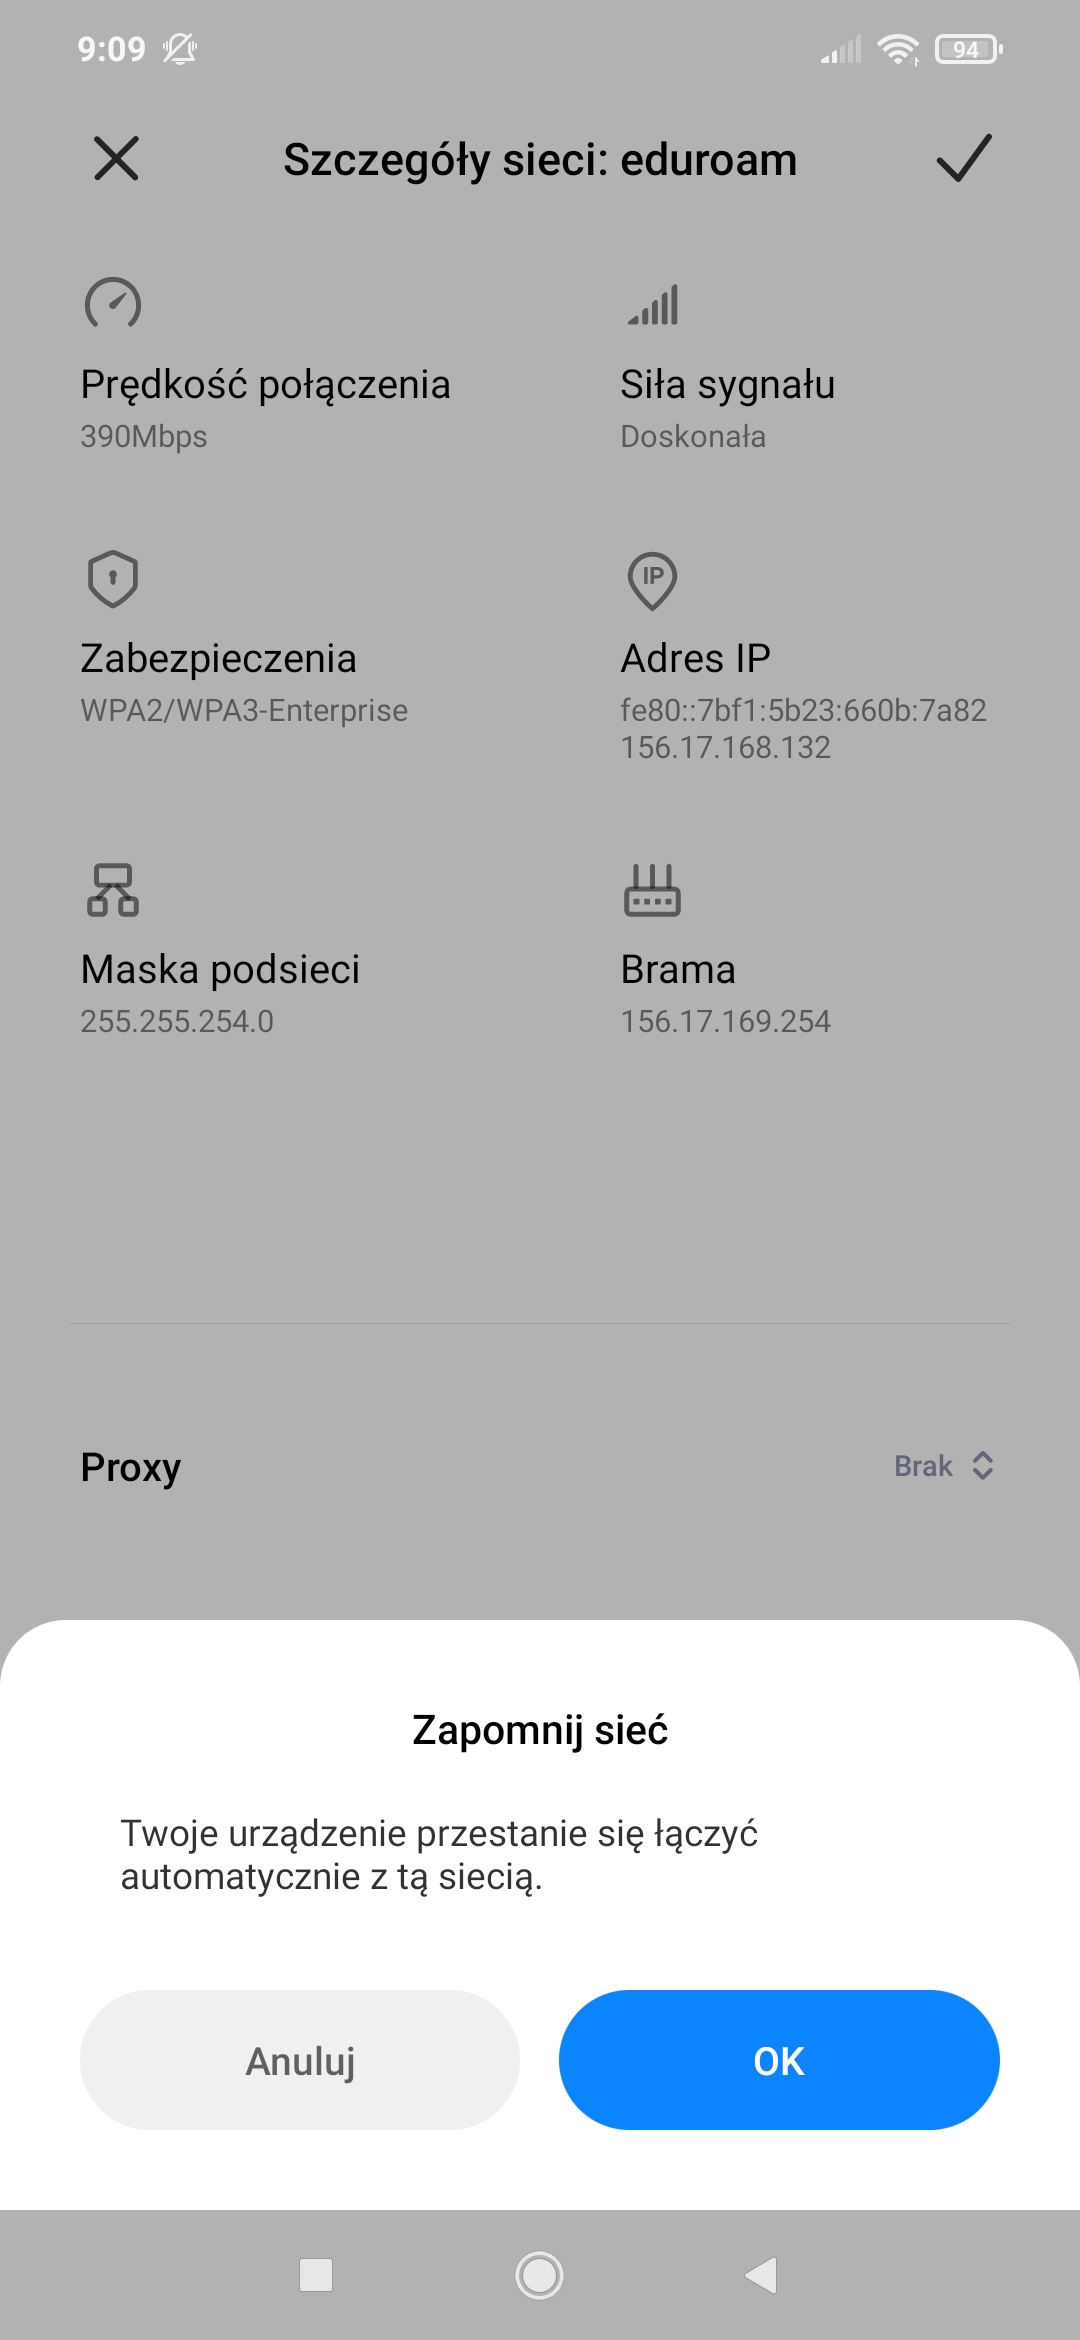 Eduroam-android-new02.jpg